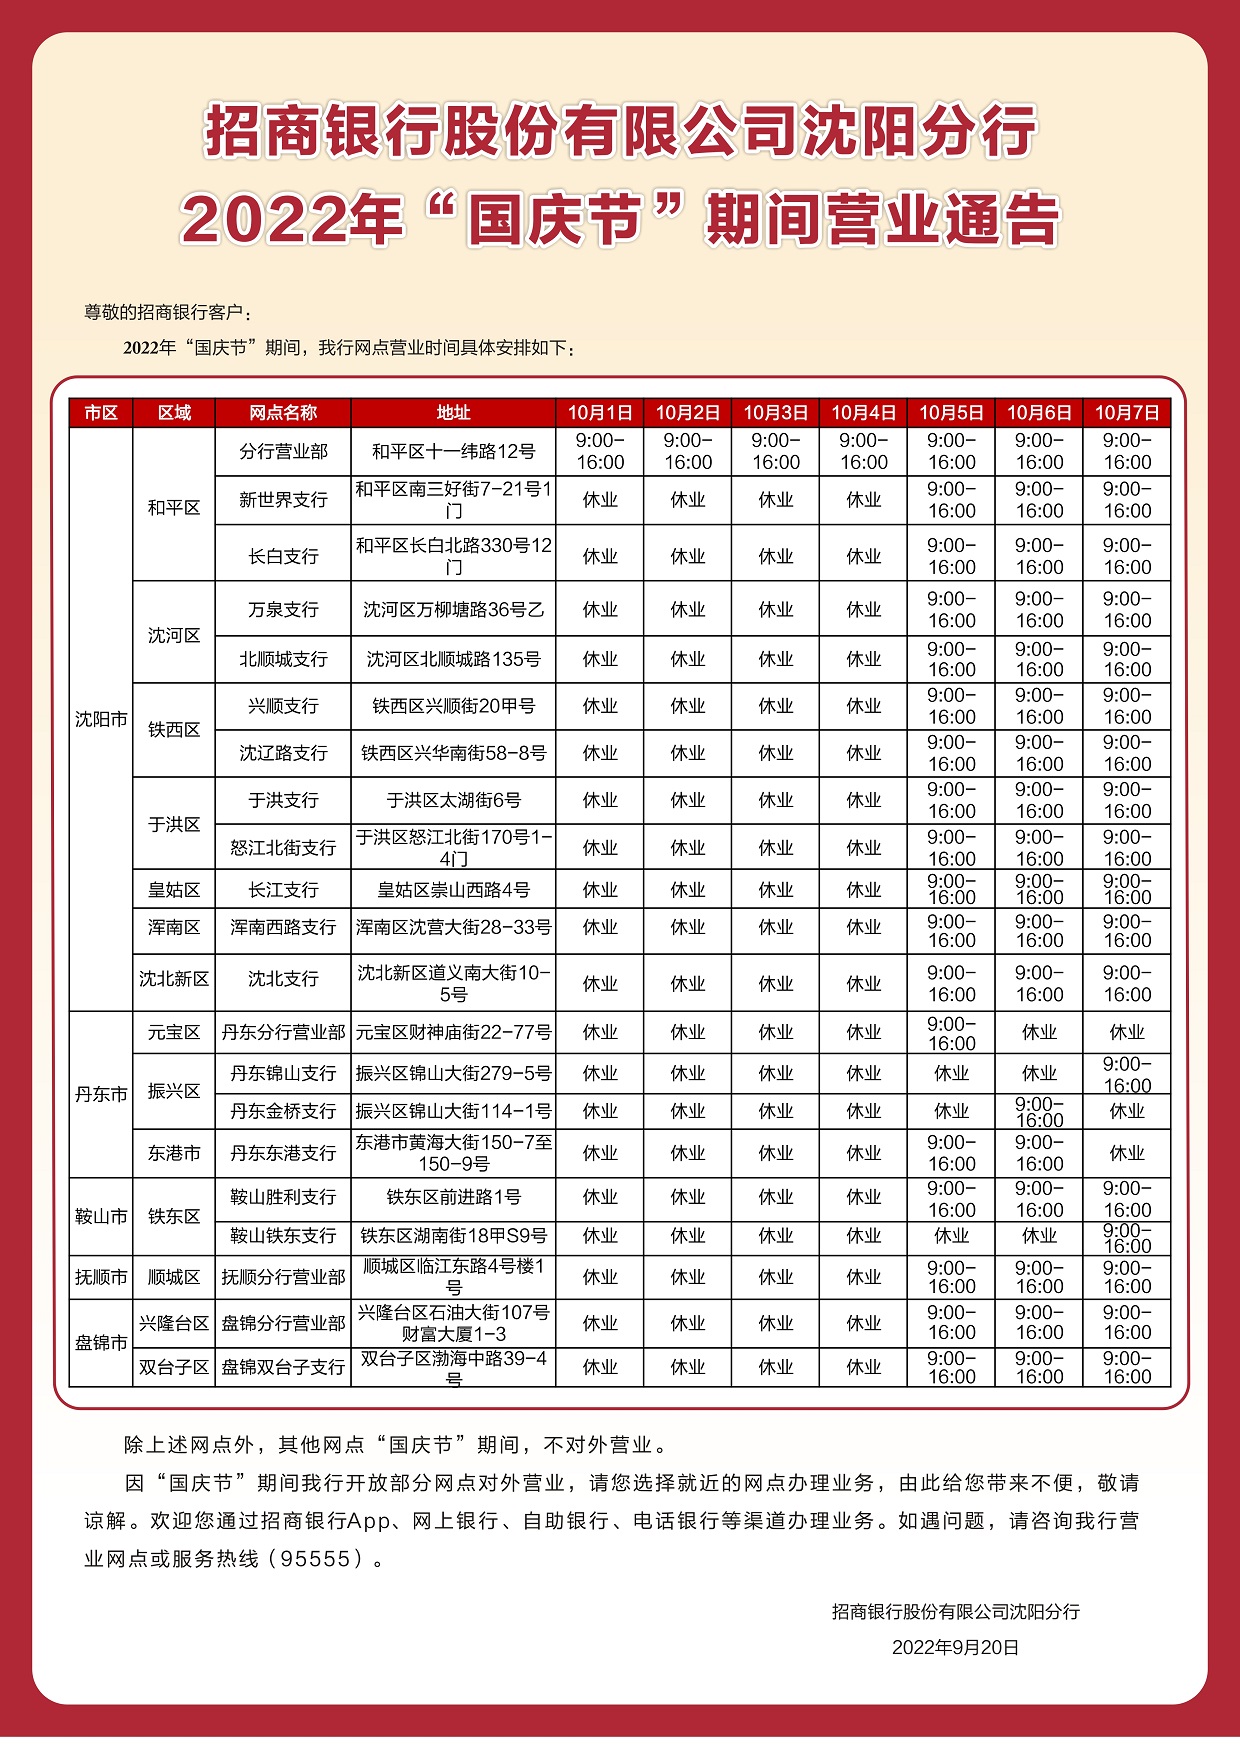 附件1.招商银行沈阳分行2022年“国庆节”期间营业通告（全）.jpg